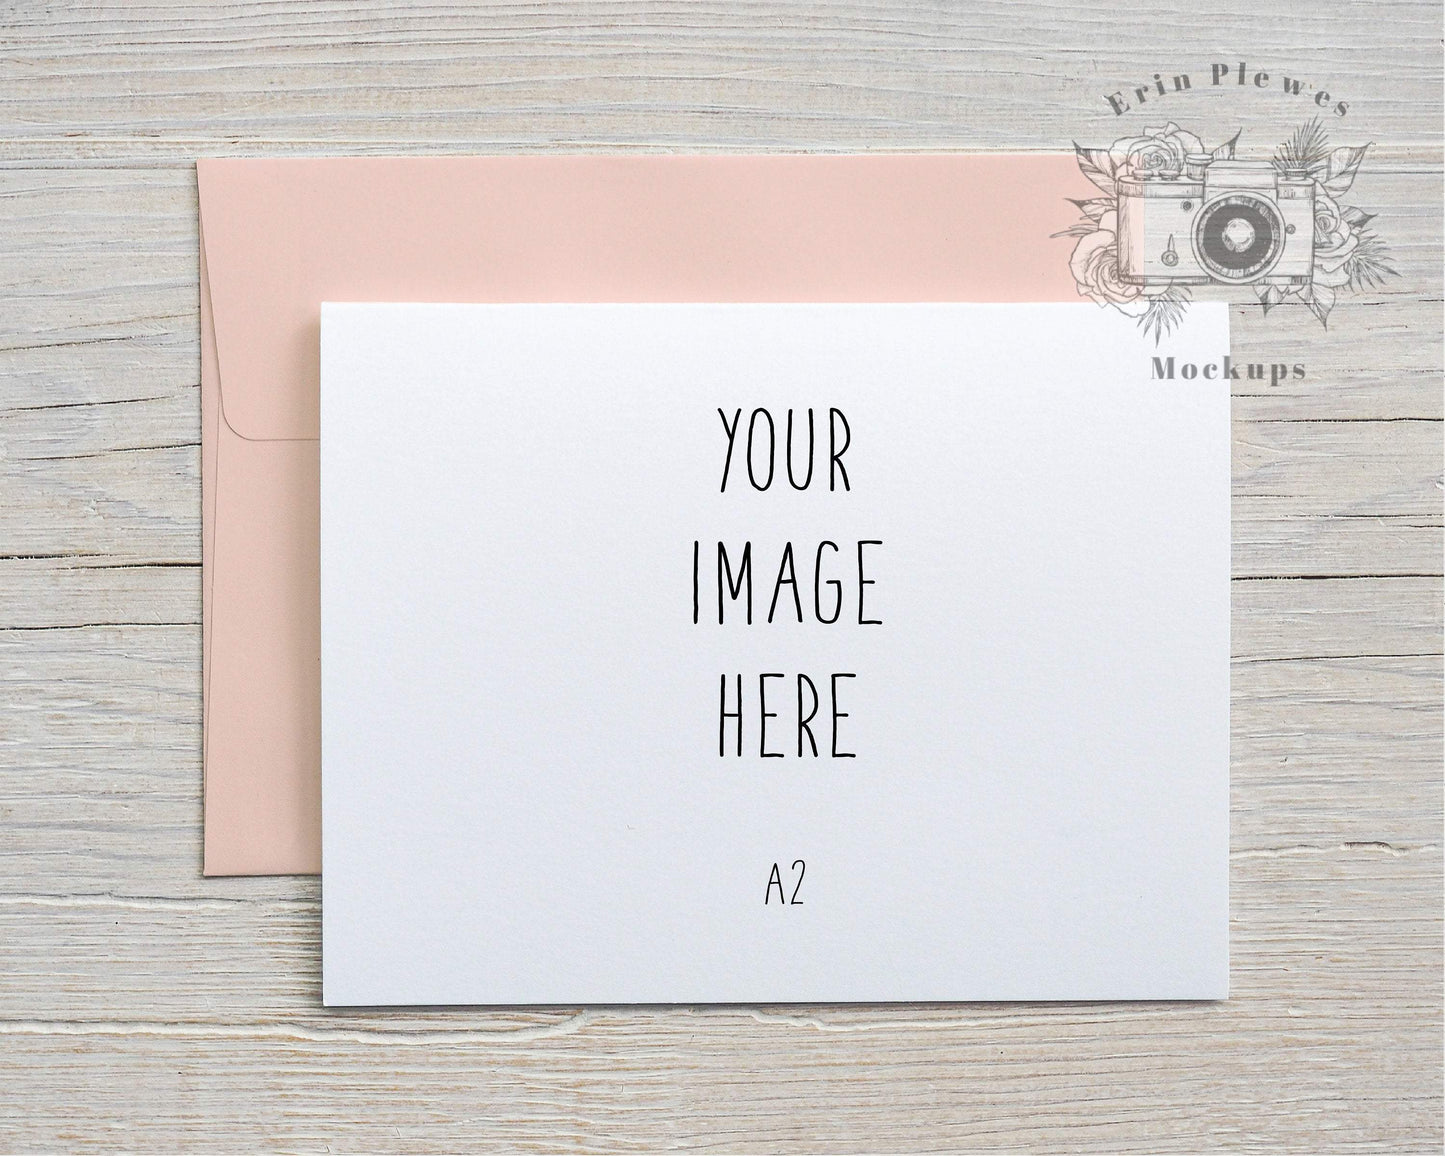 Erin Plewes Mockups A2 Card Mockup with Pink Envelope Landscape, Digital Download